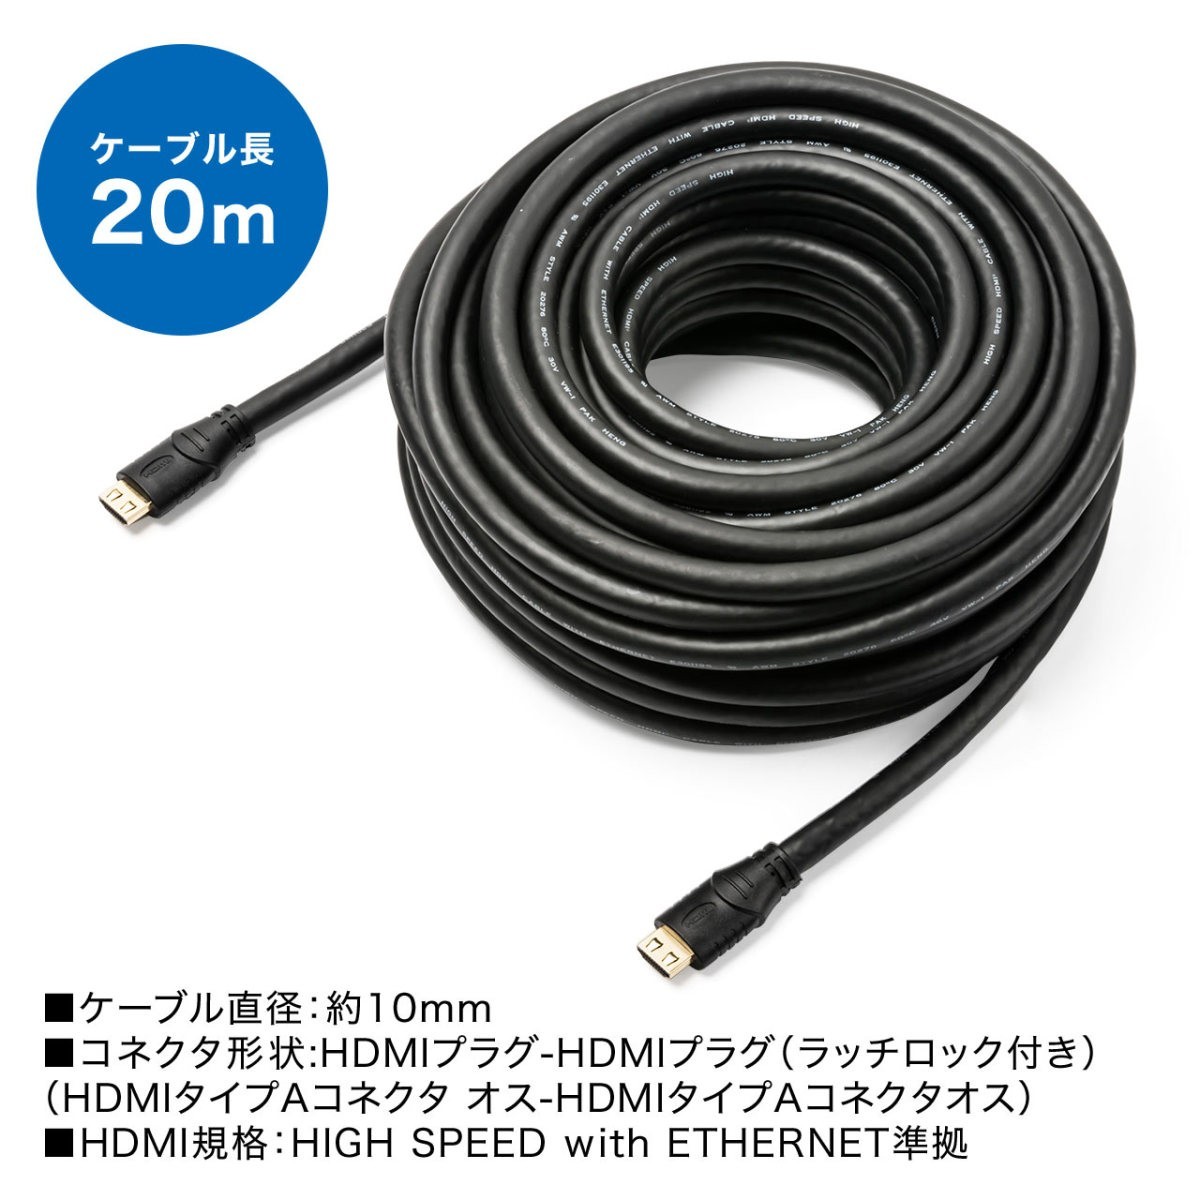 HDMIケーブル ロング ケーブル HDMI 20m 抜けにくい ラッチ付き 抜け